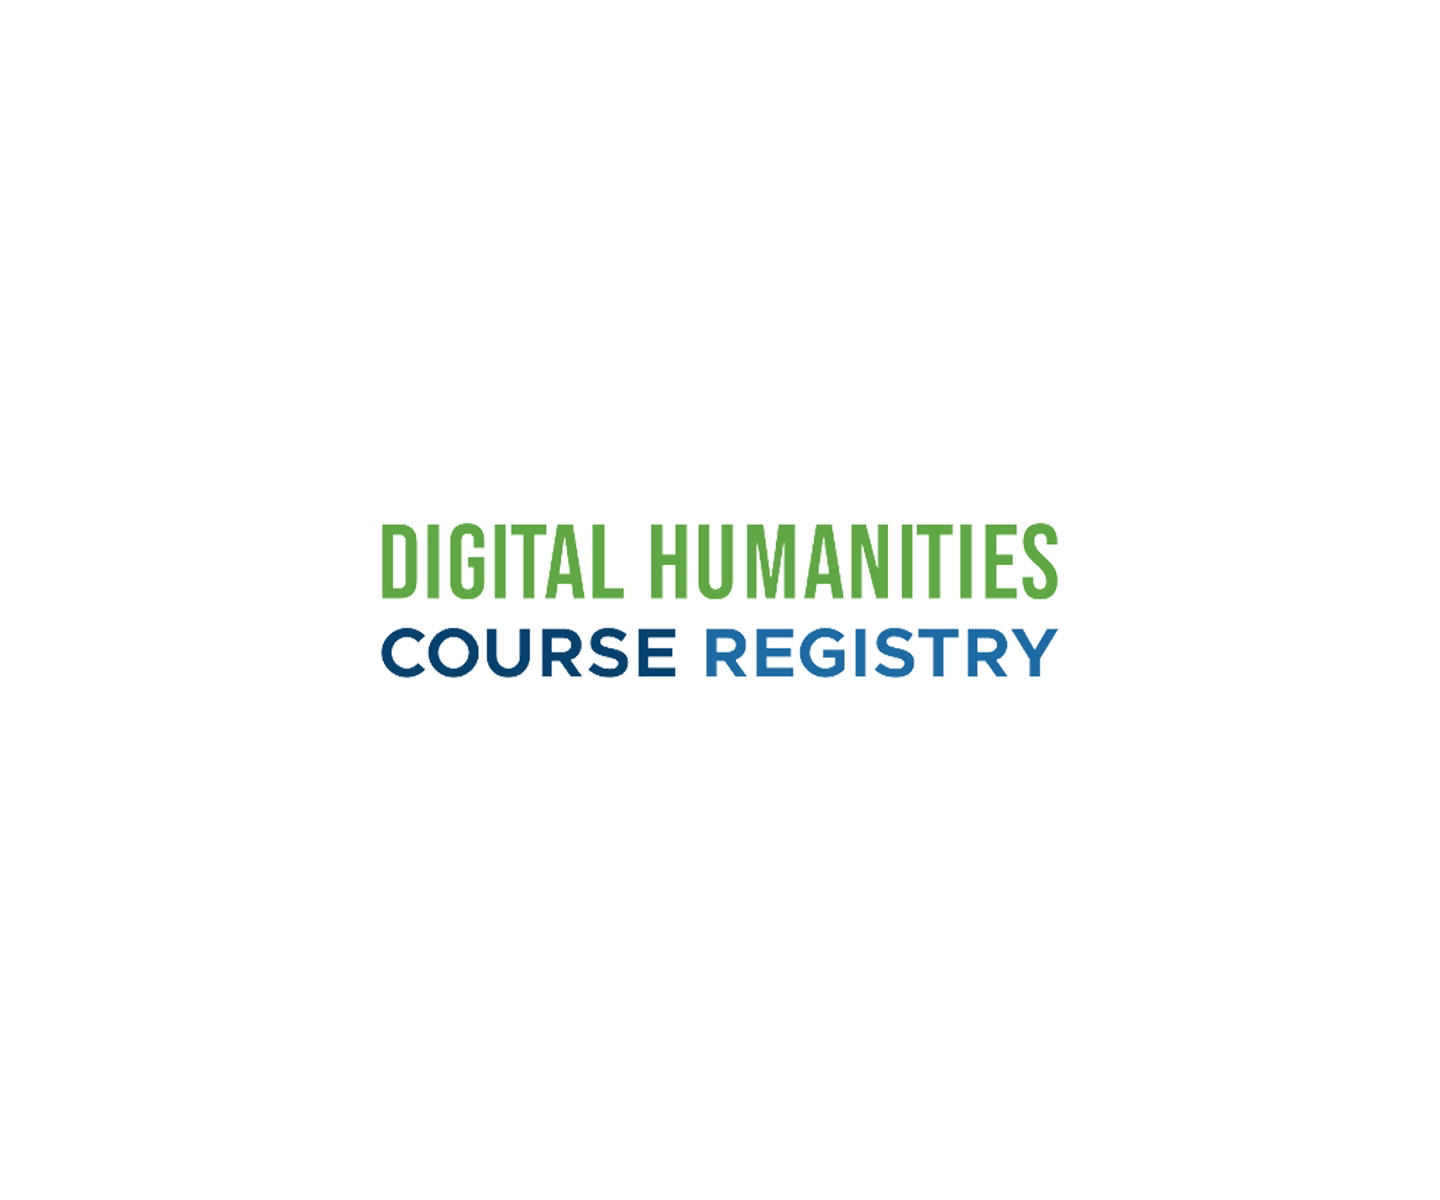 Μητρώο προγραμμάτων διδασκαλίας στις Ψηφιακές Ανθρωπιστικές Σπουδές